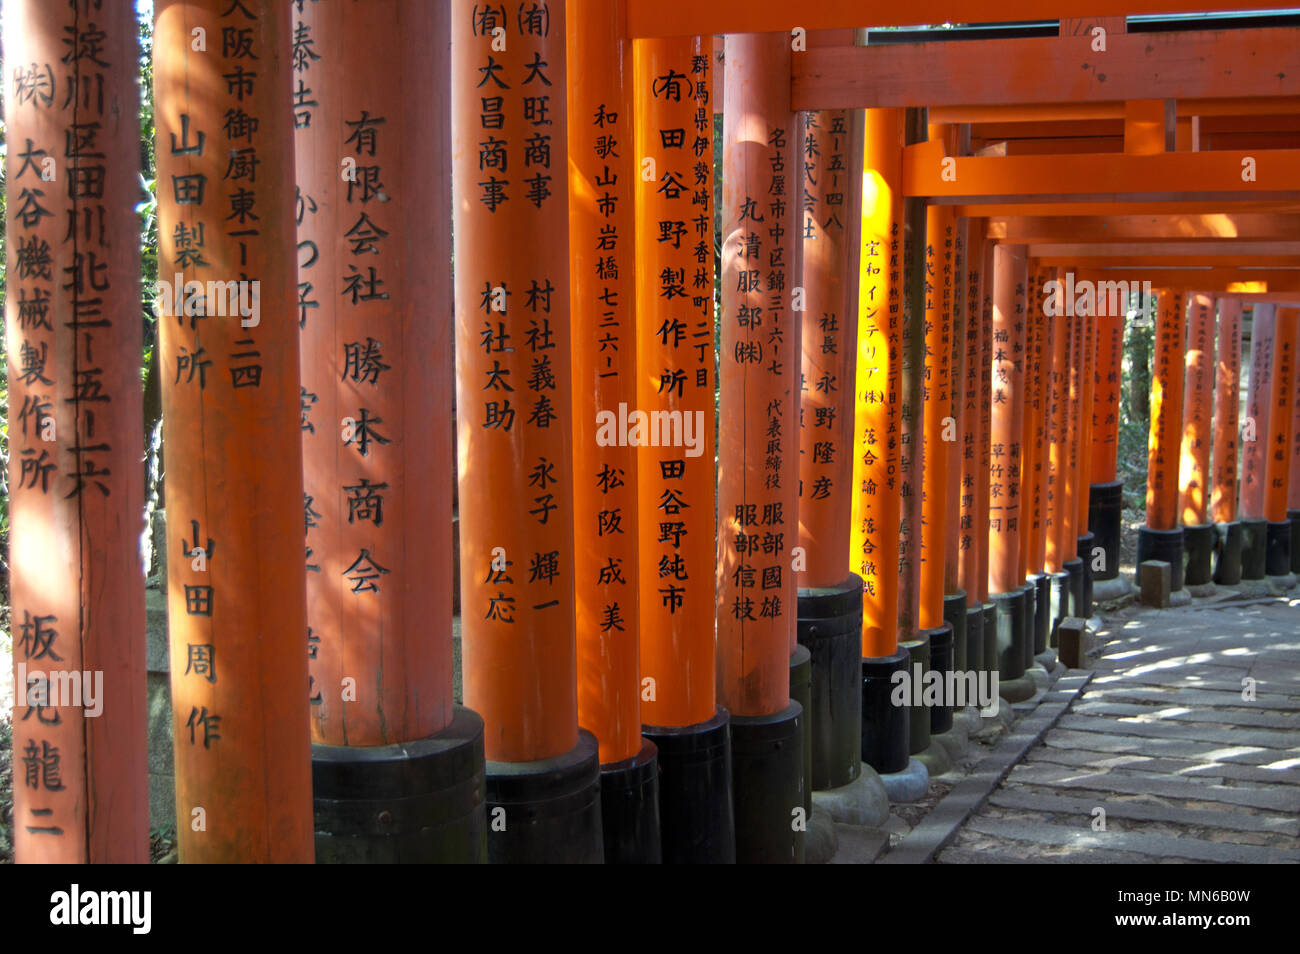 Tori portes avec aucun peuple au Sanctuaire Fushimi Inari, Kyoto, Japon Banque D'Images